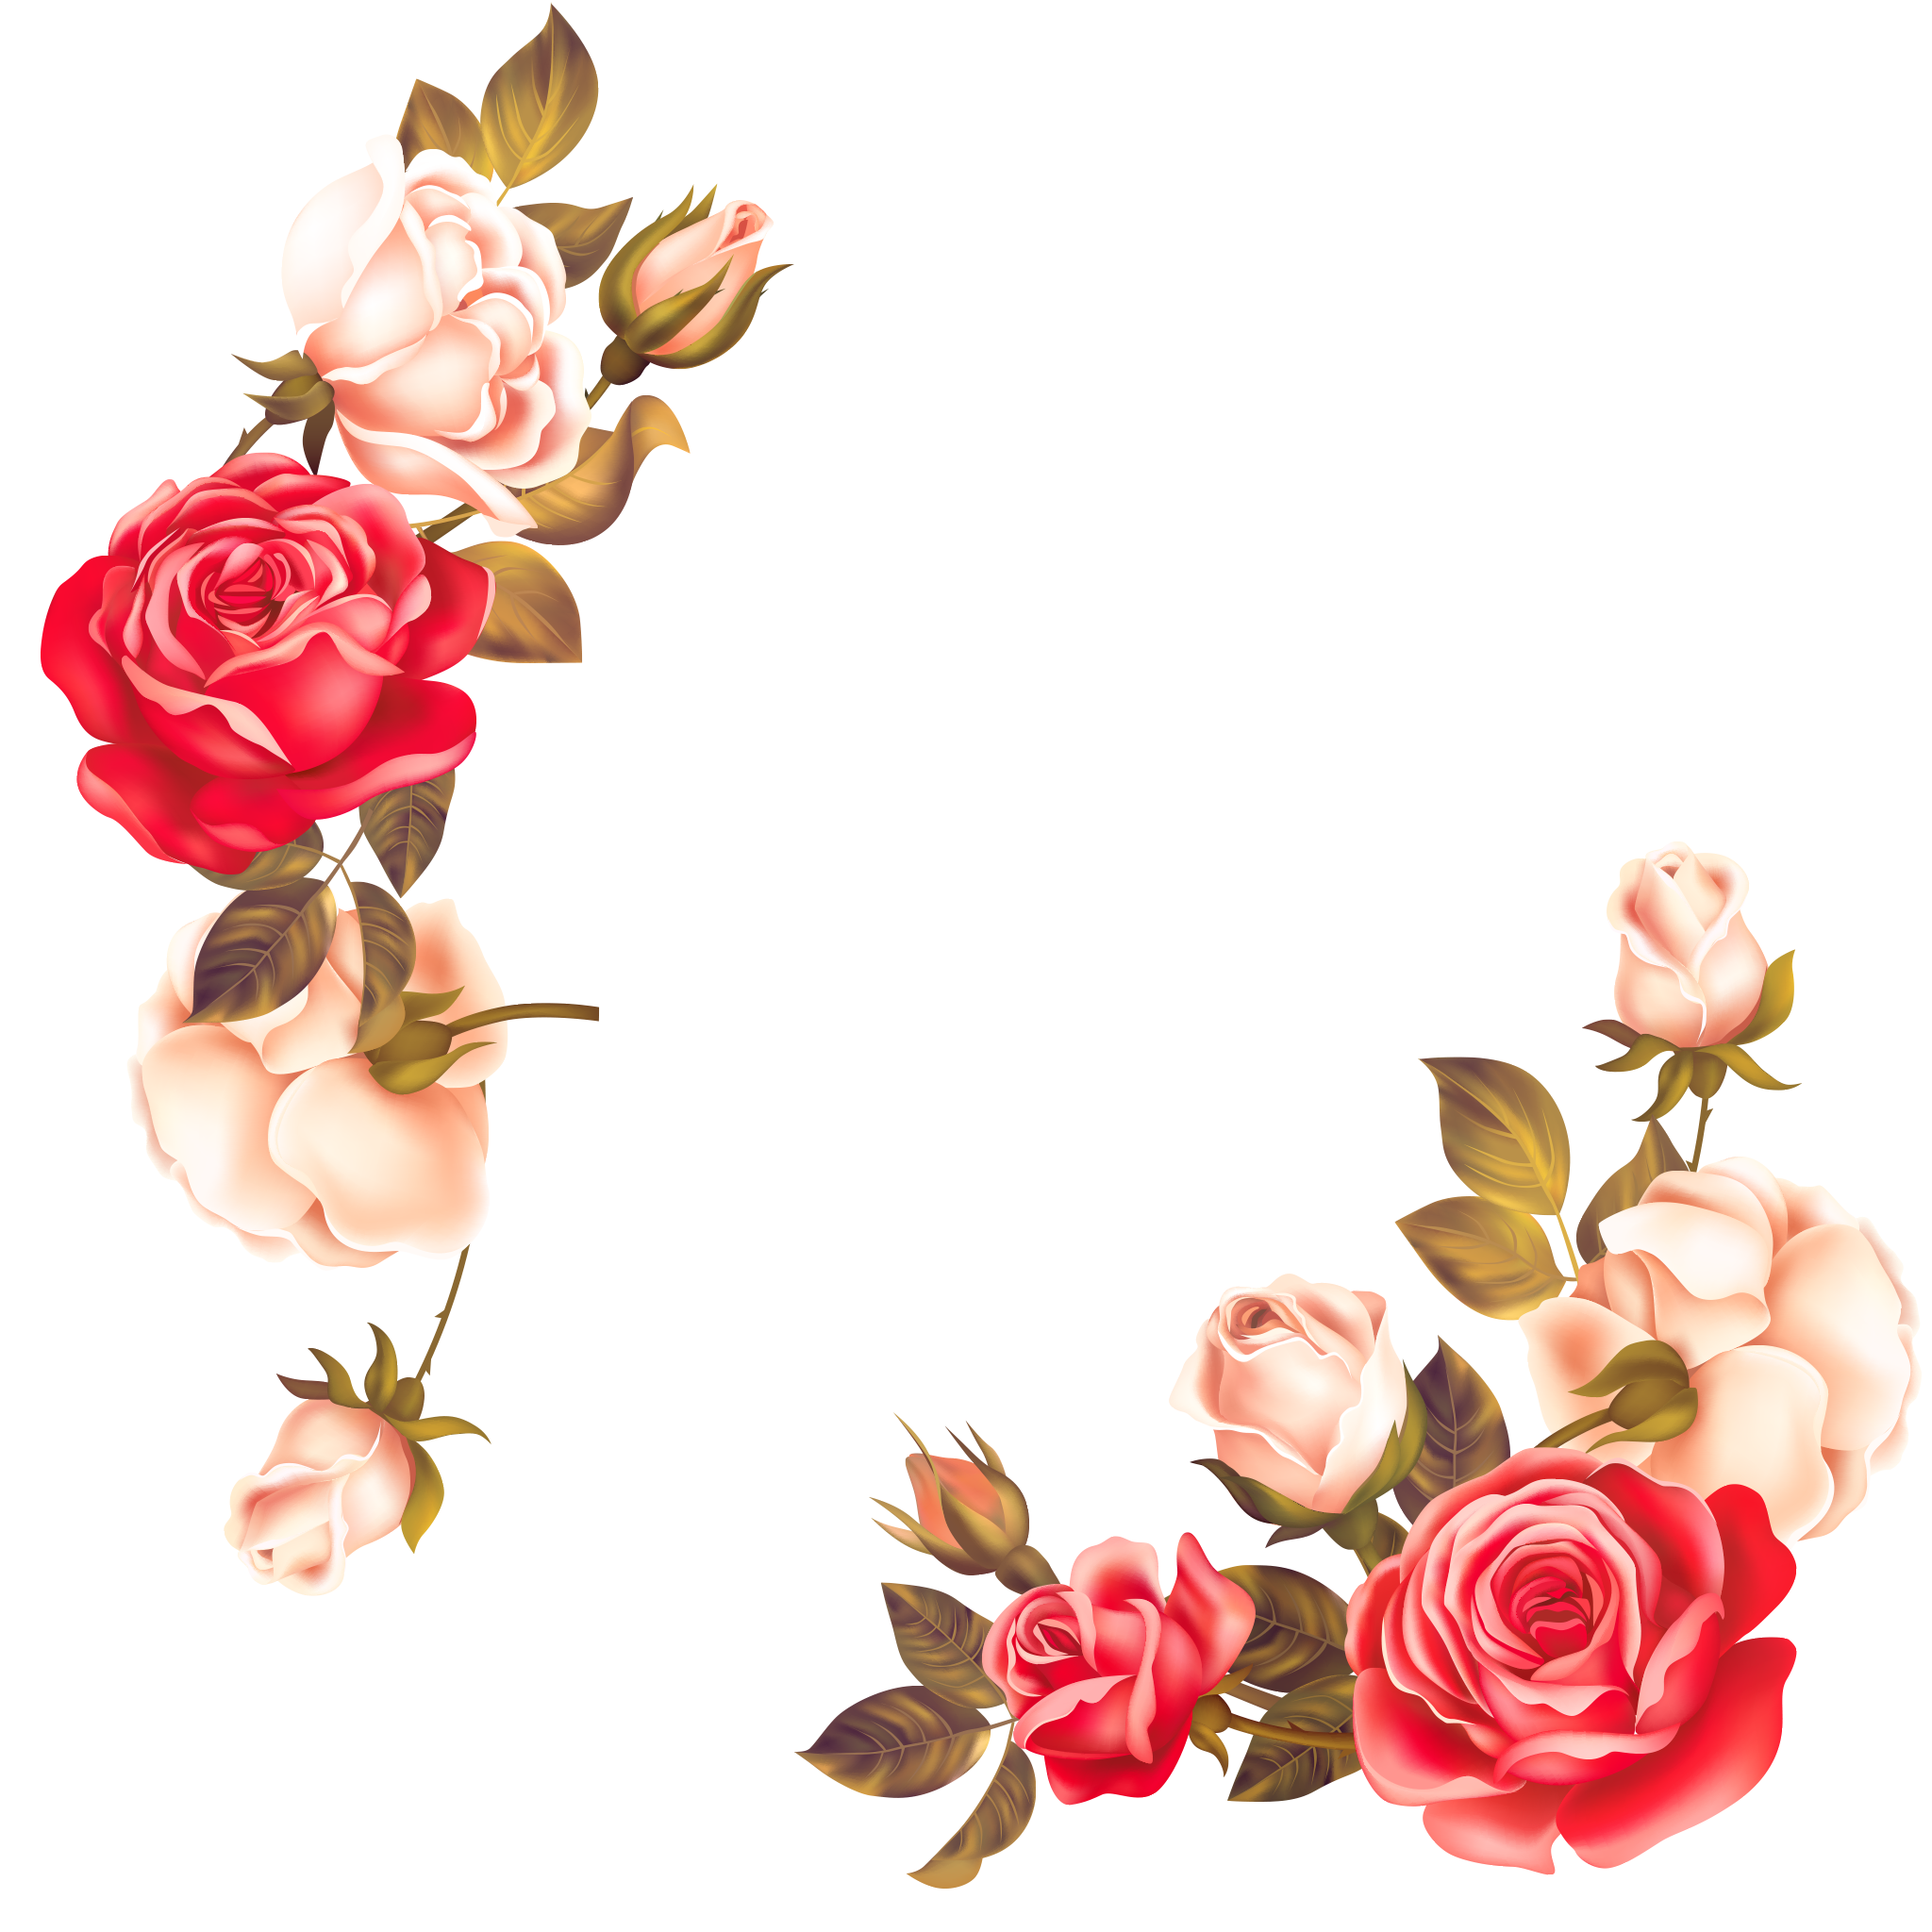 Rose Flower Frame Transparent Background